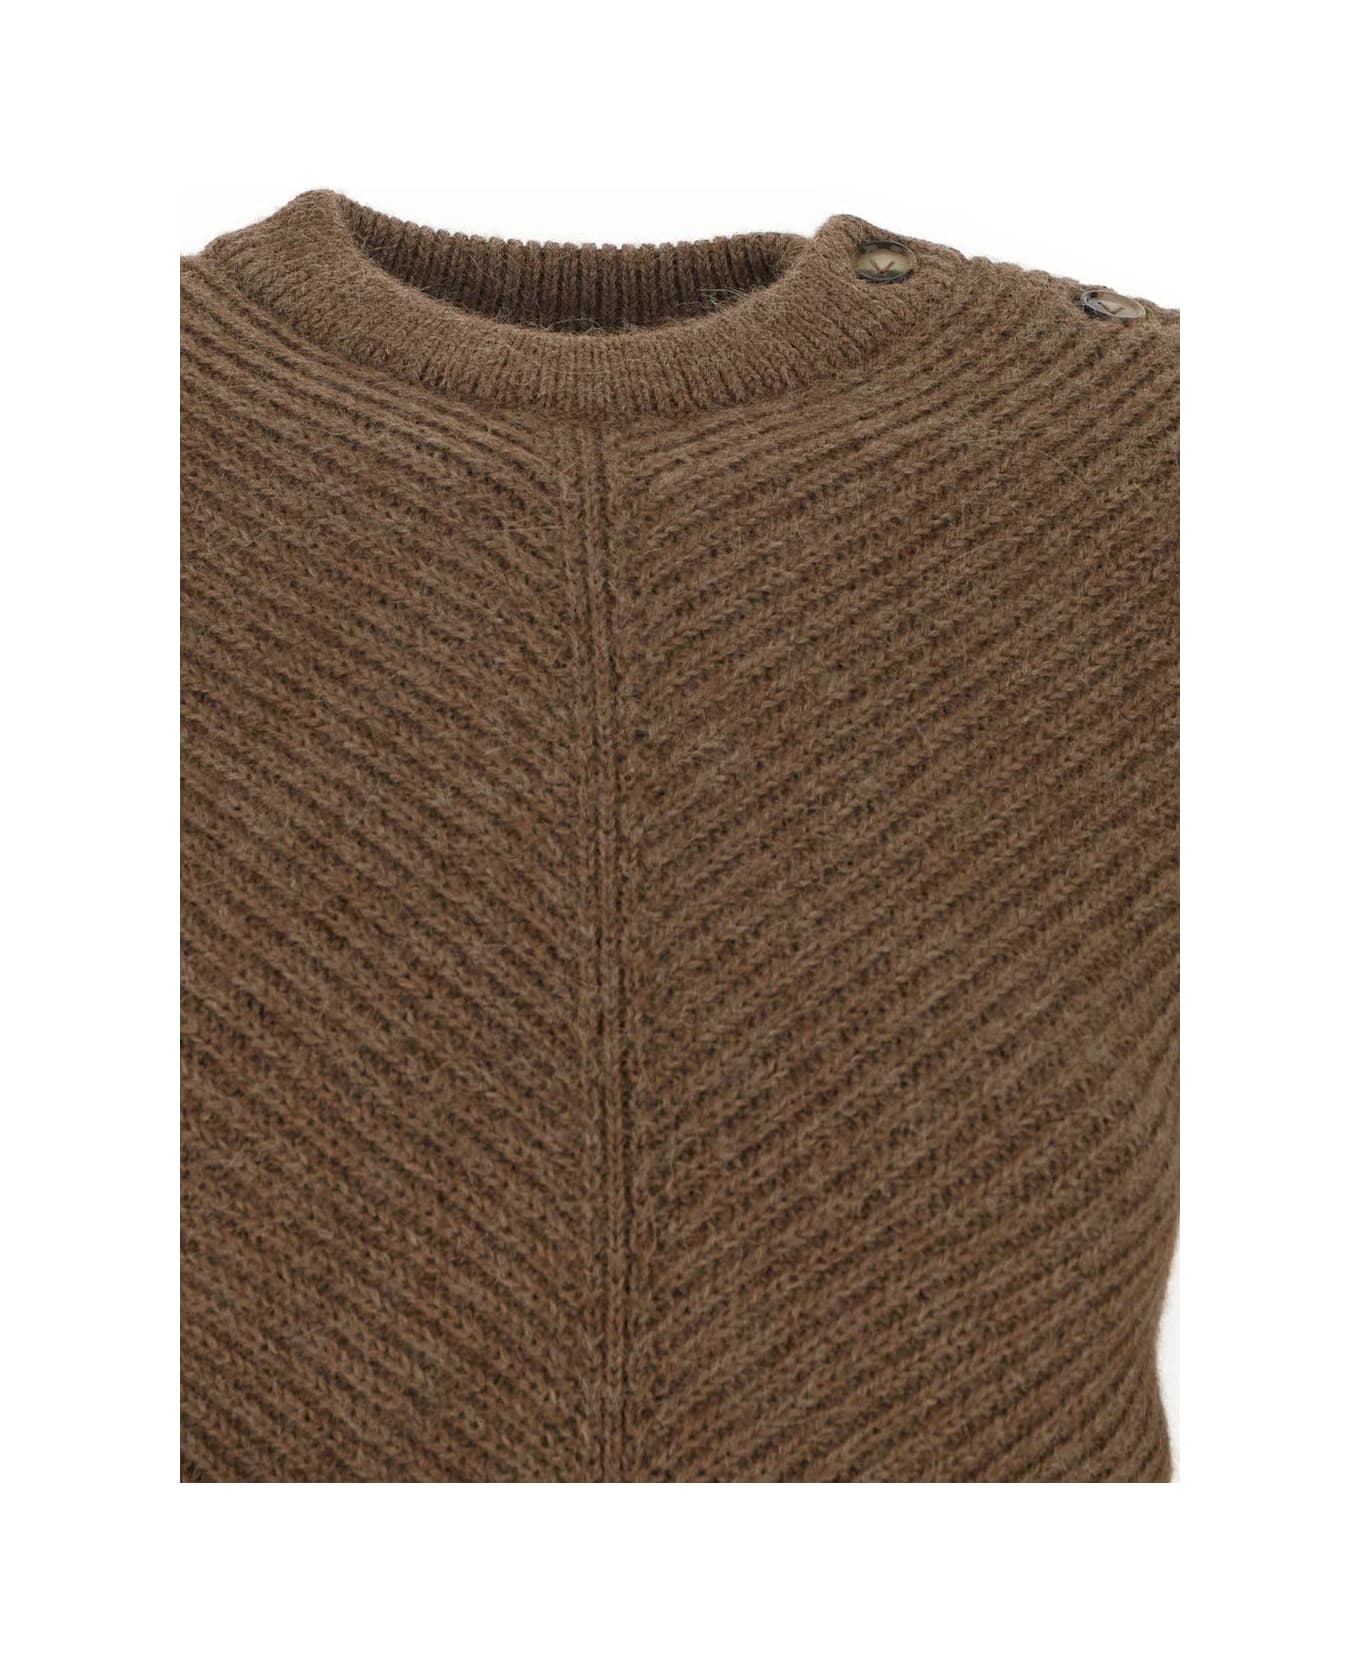 Bottega Veneta Riverbed Sweater - BEIGE